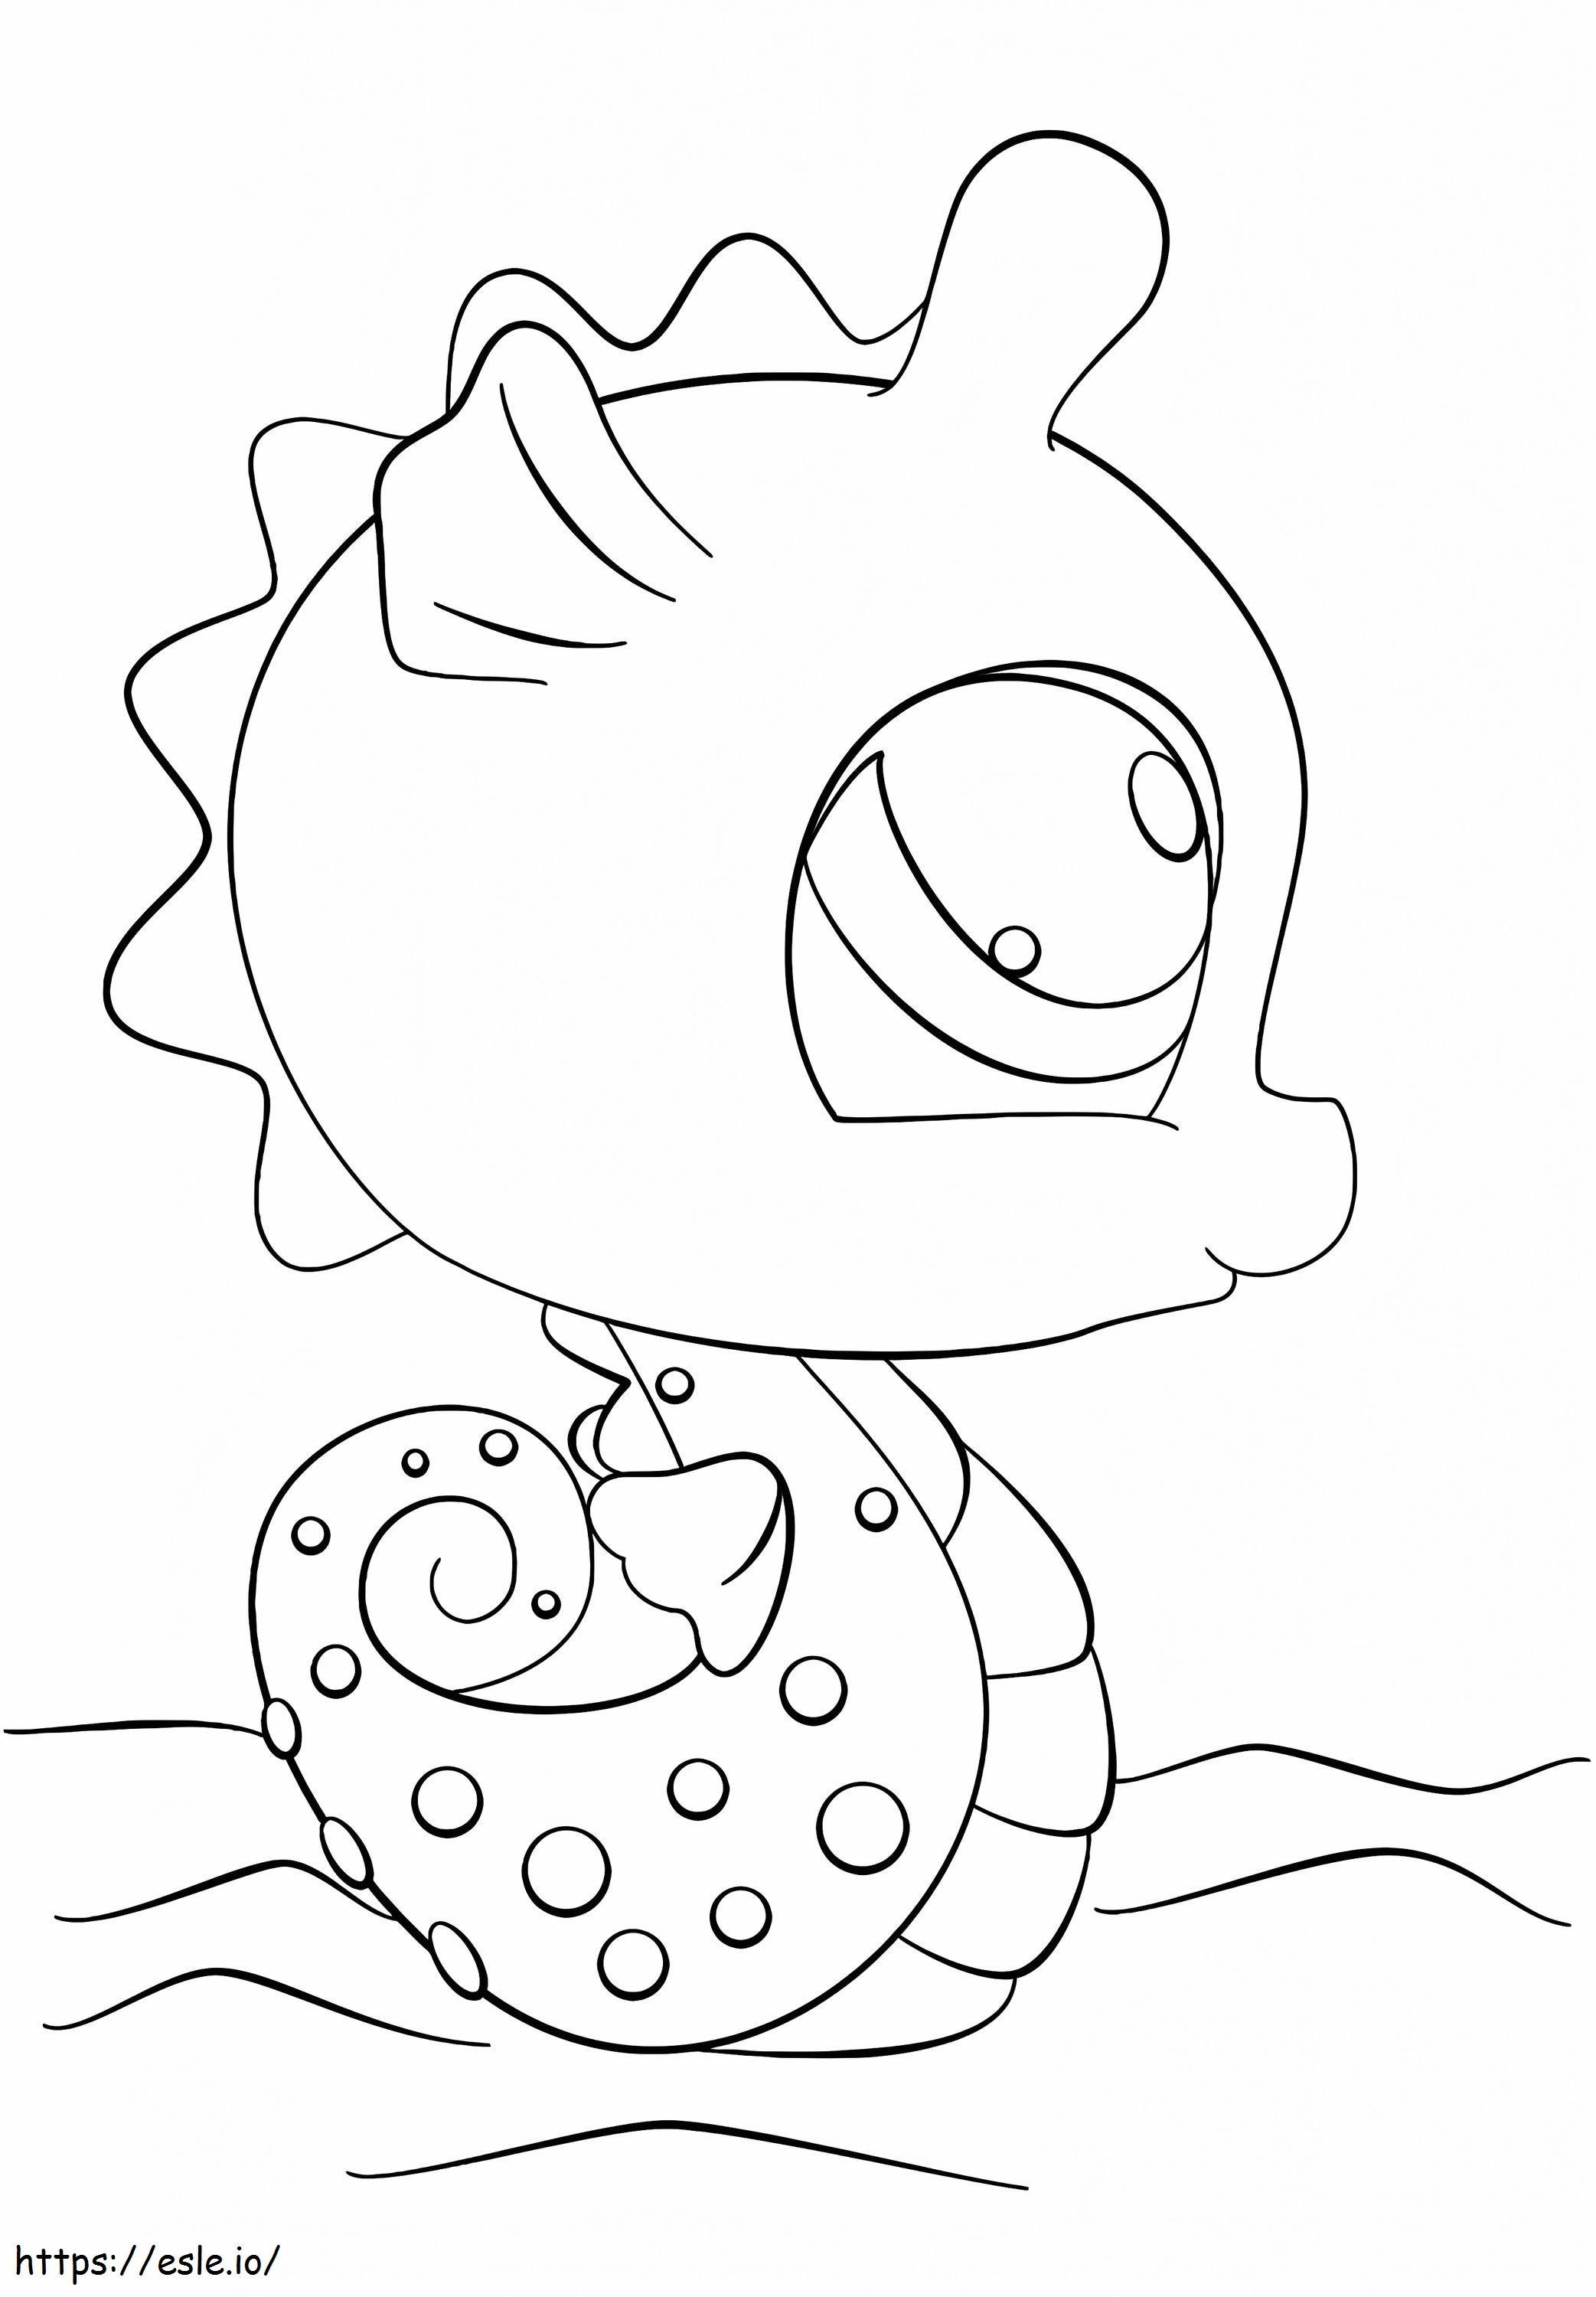 1578646284 Littlest Pet Shop Seahorse coloring page